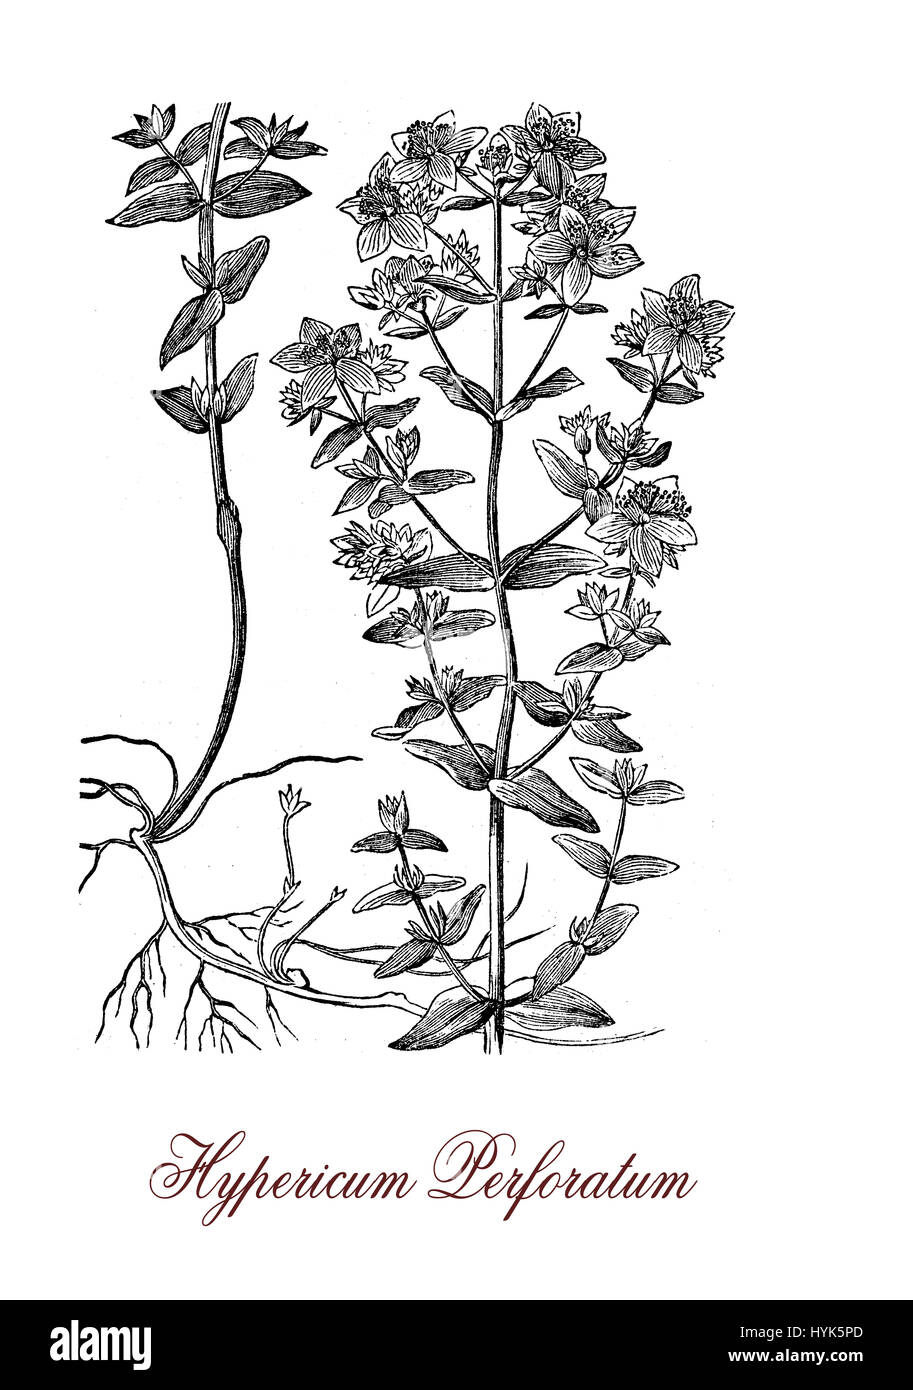 Hypericum Perforatum oder Johanniskraut ist eine blühende Pflanze und Heilpflanze mit Antidepressiva und Anti-inflammatorische Aktivität. Die Blätter haben durchscheinende Punkte, die Blüten sind leuchtend gelb. Stockfoto